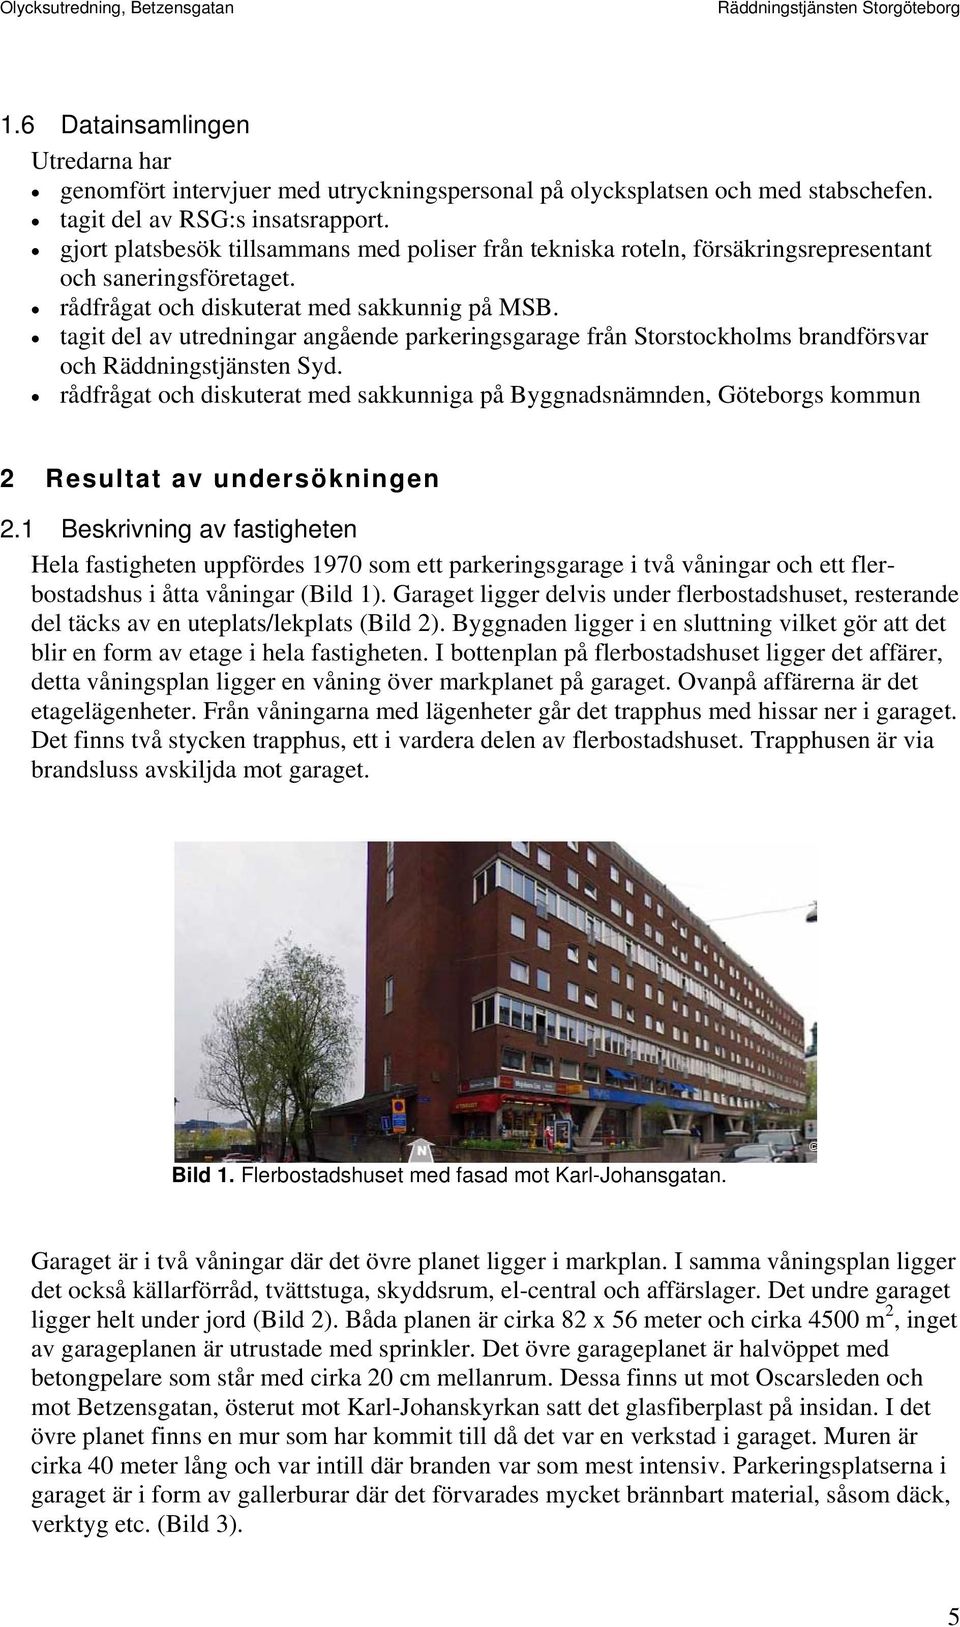 tagit del av utredningar angående parkeringsgarage från Storstockholms brandförsvar och Räddningstjänsten Syd.